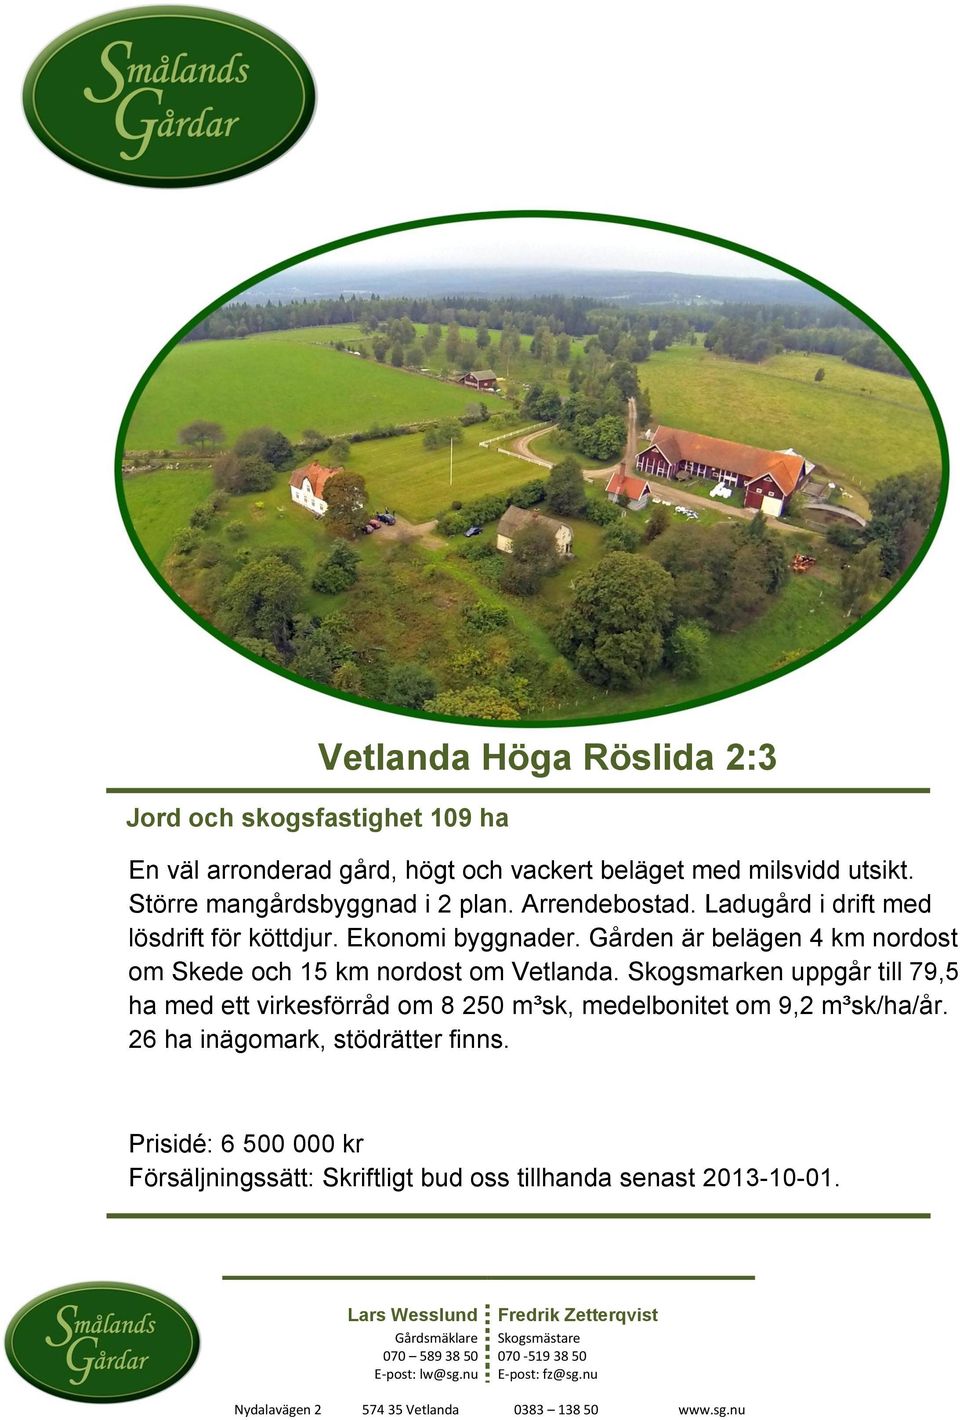 Gården är belägen 4 km nordost om Skede och 15 km nordost om Vetlanda.